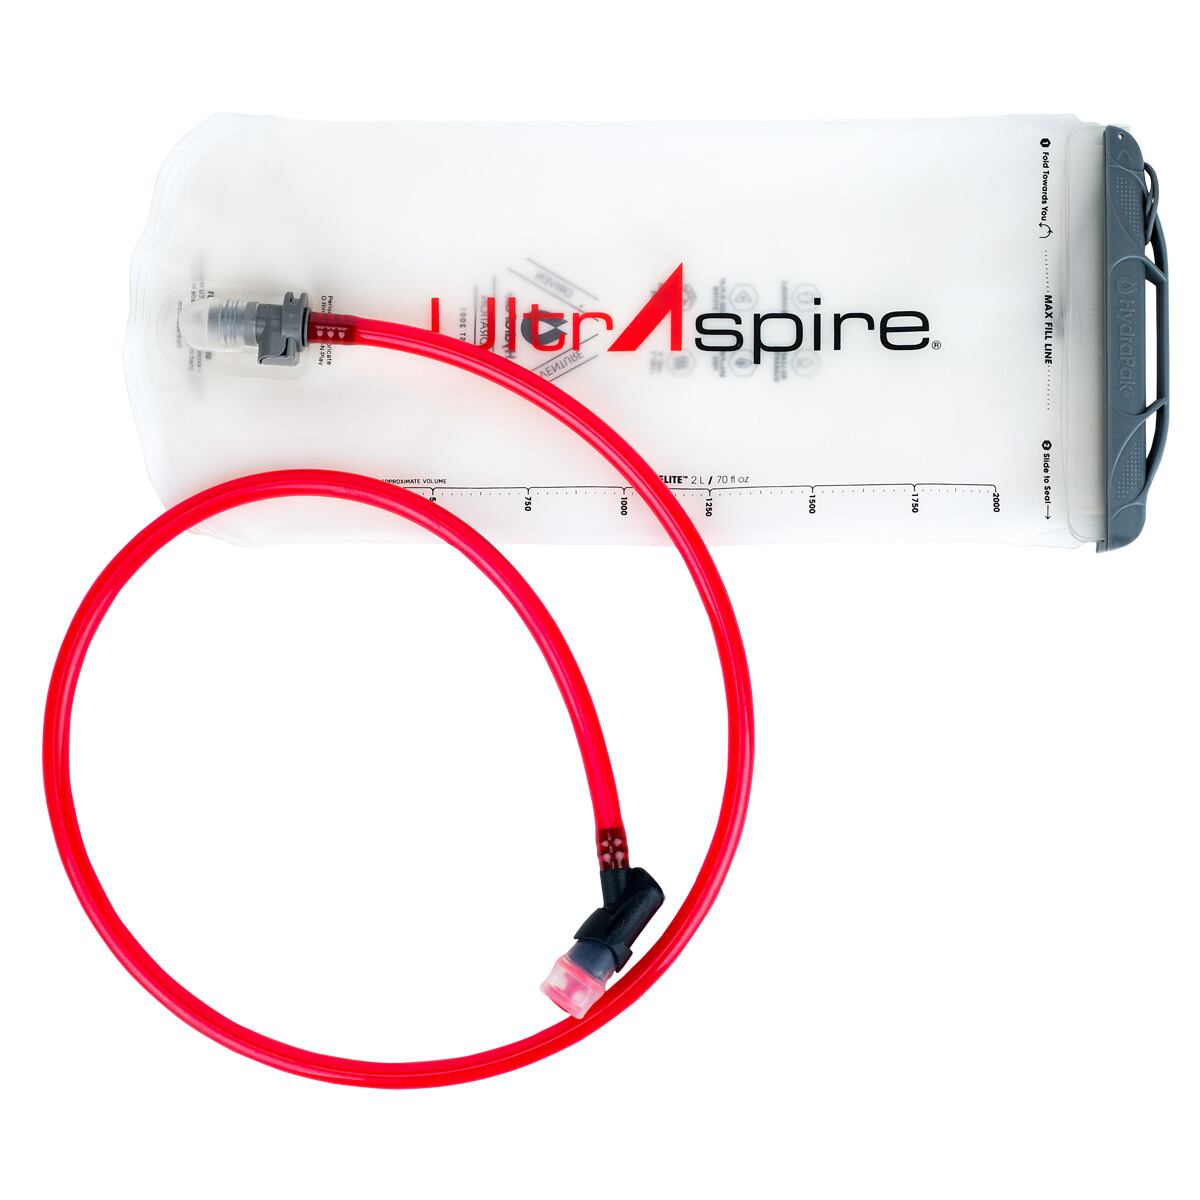 ULTRASPIRE (ウルトラスパイア) 2Lプラダー2.0